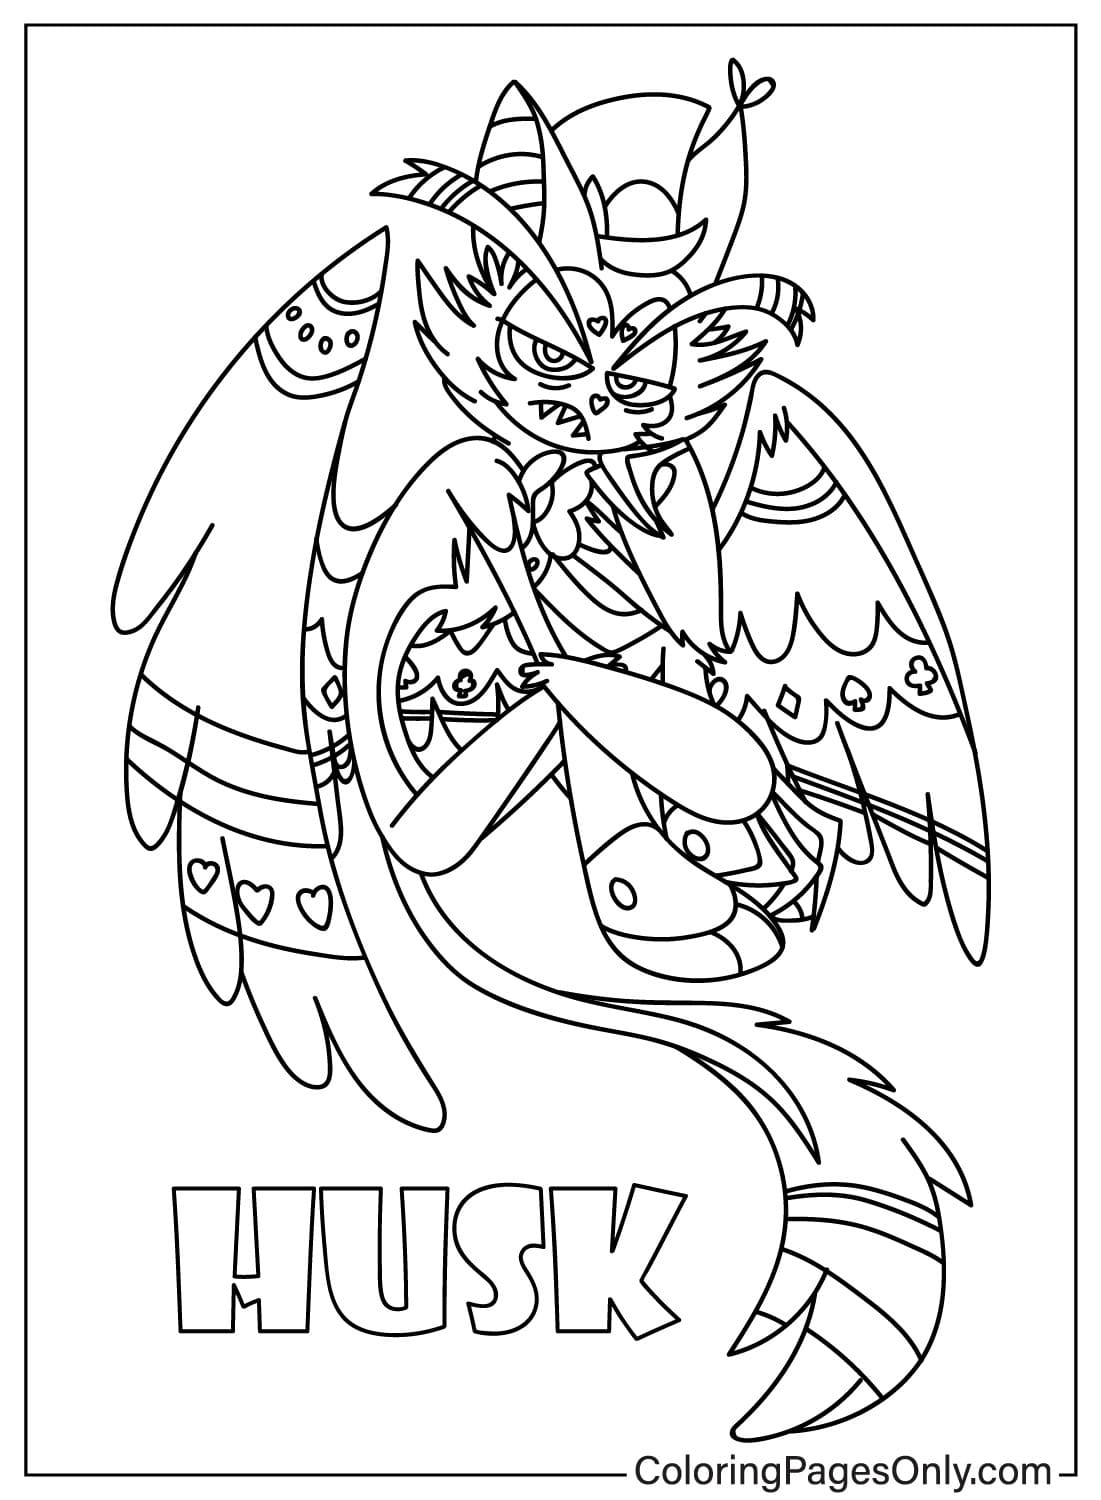 Página para colorear de Husk de Husk